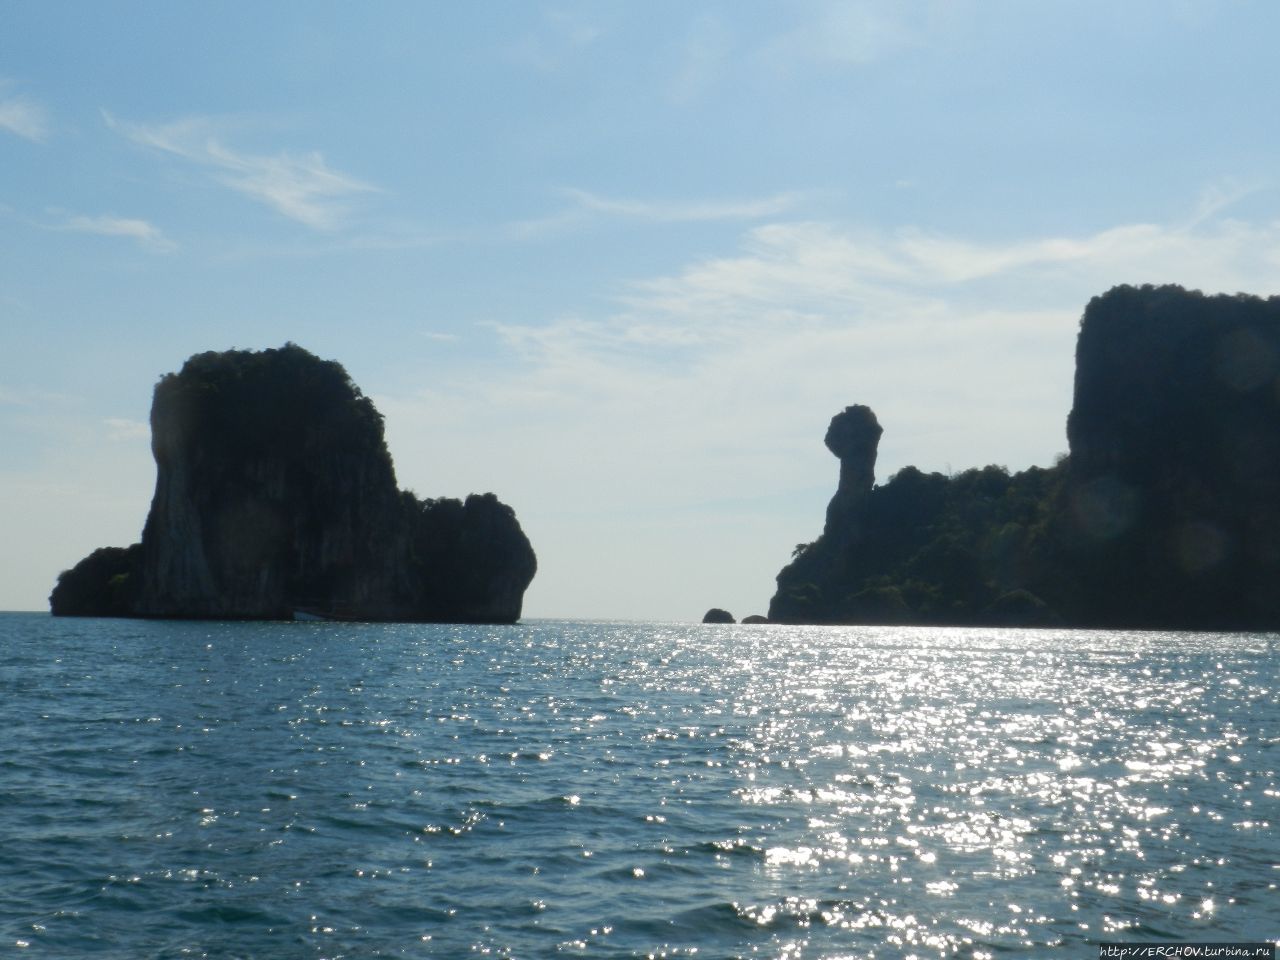 Экскурсия по островам. Ч — 4. Полуостров Рейли. Пляж Прананг Краби, Таиланд